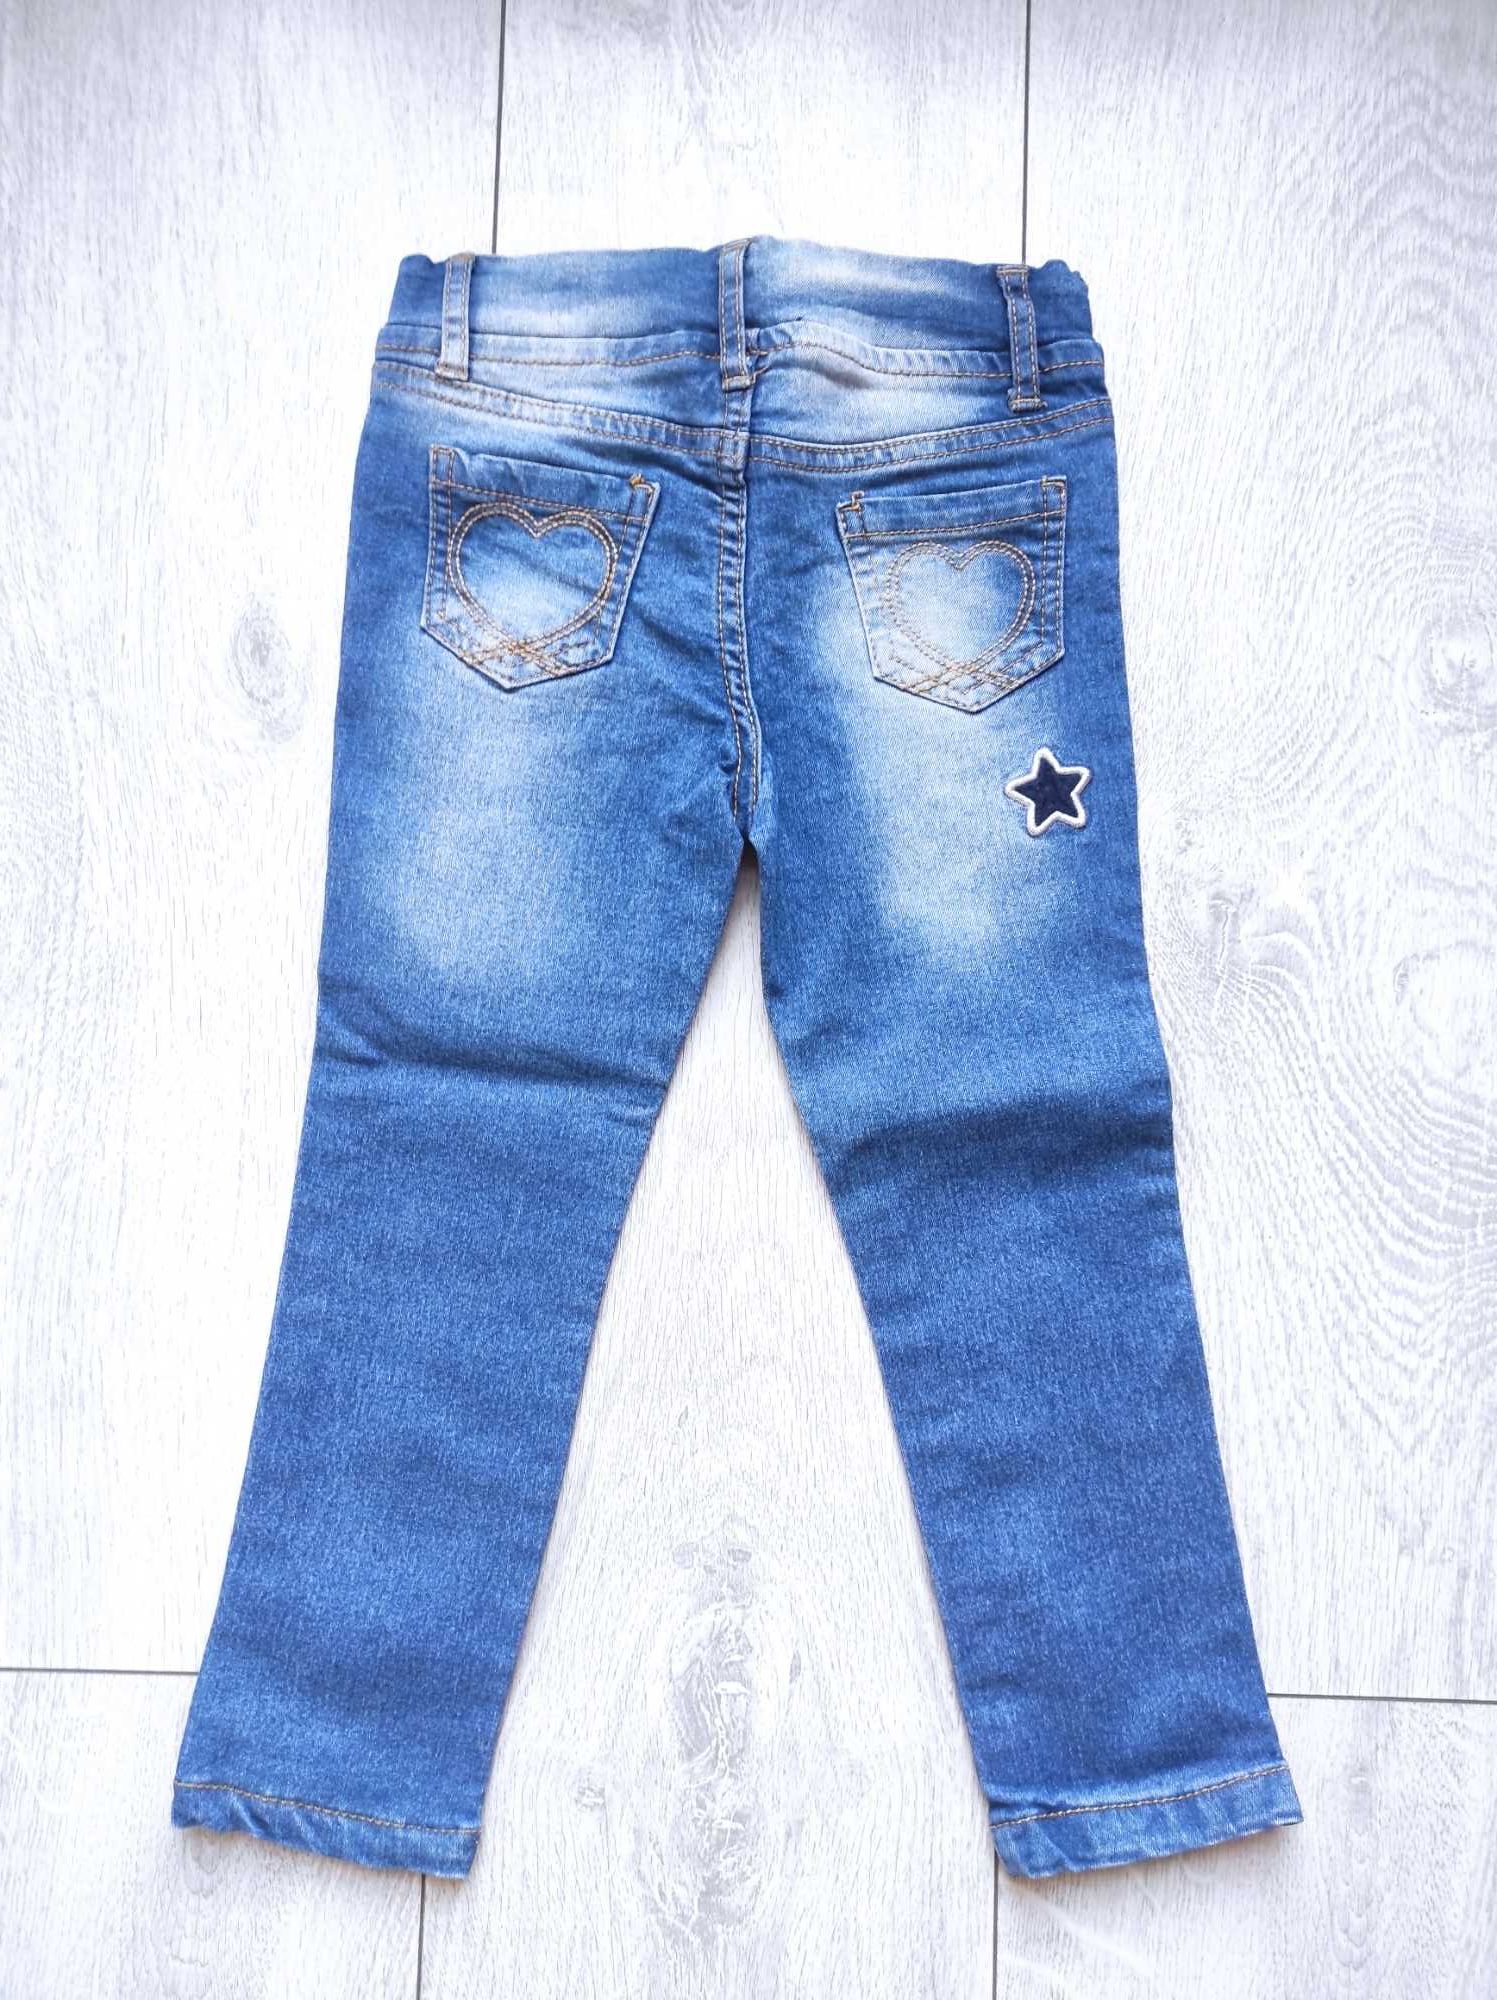 Ciemnoniebieskie jeansy dla dziewczynki r. 98